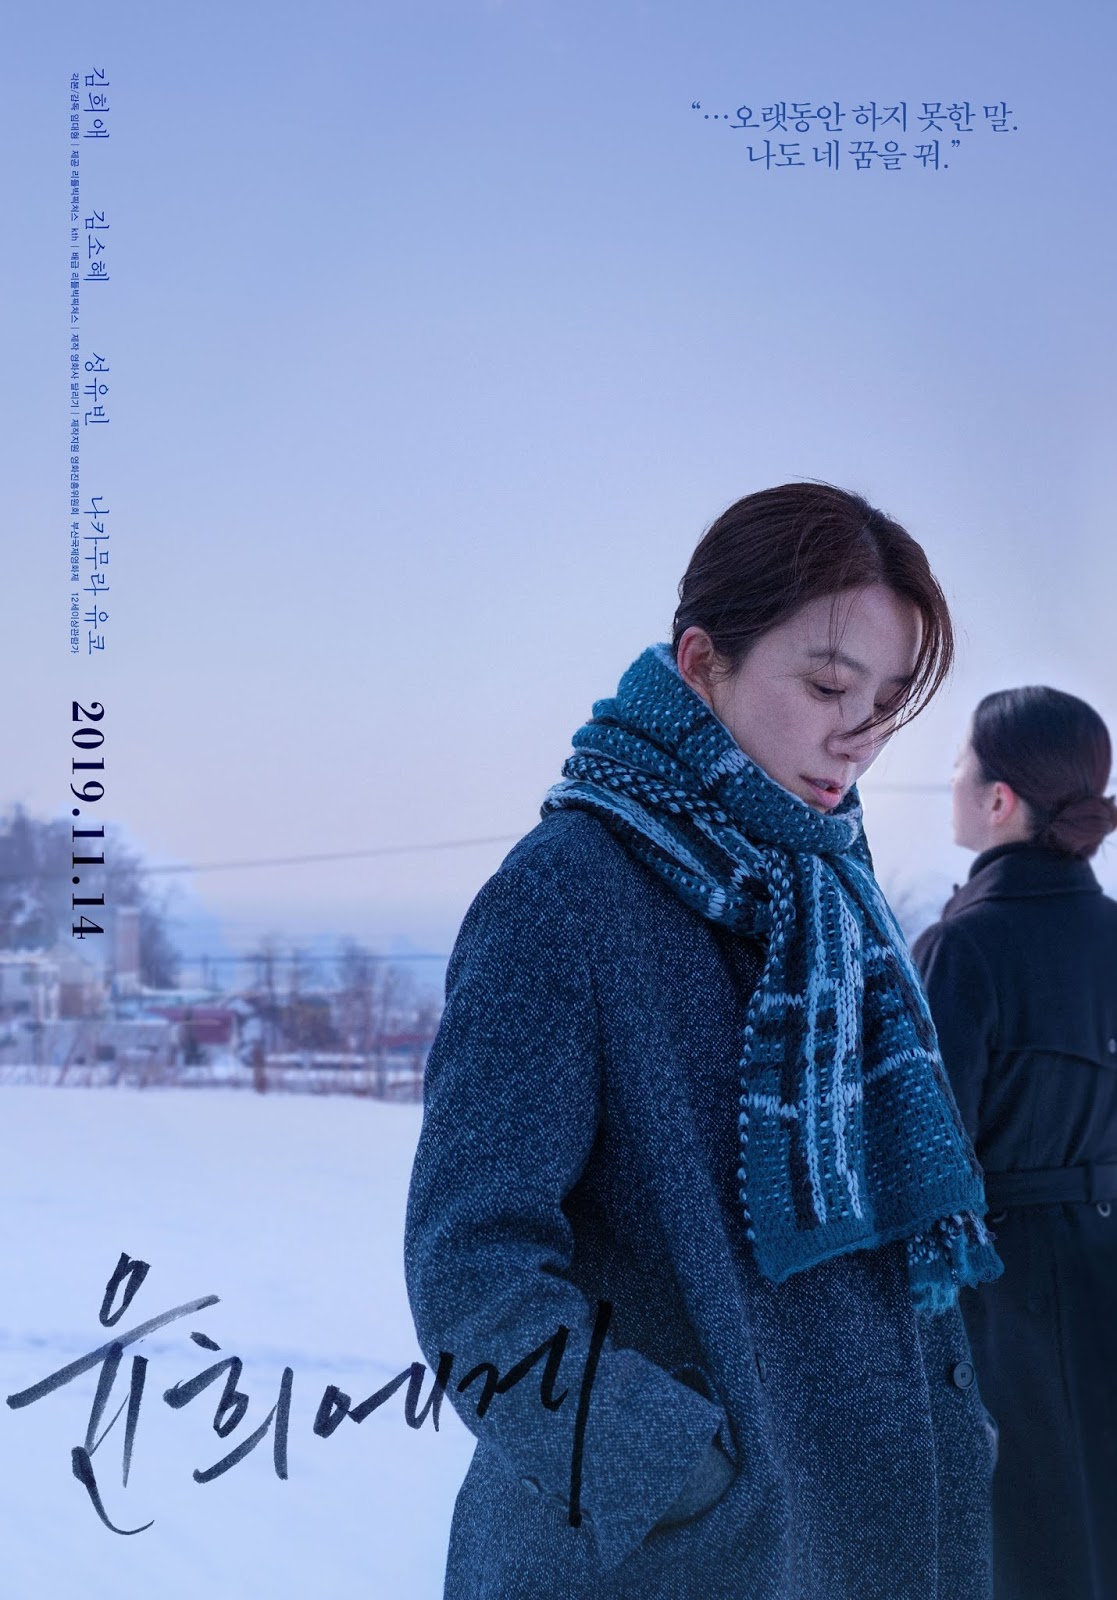 ดูหนังออนไลน์ฟรี Moonlit Winter (Yunhui-Ege) (2019) มูนลิทวินเทอร์ [Soundtrack]